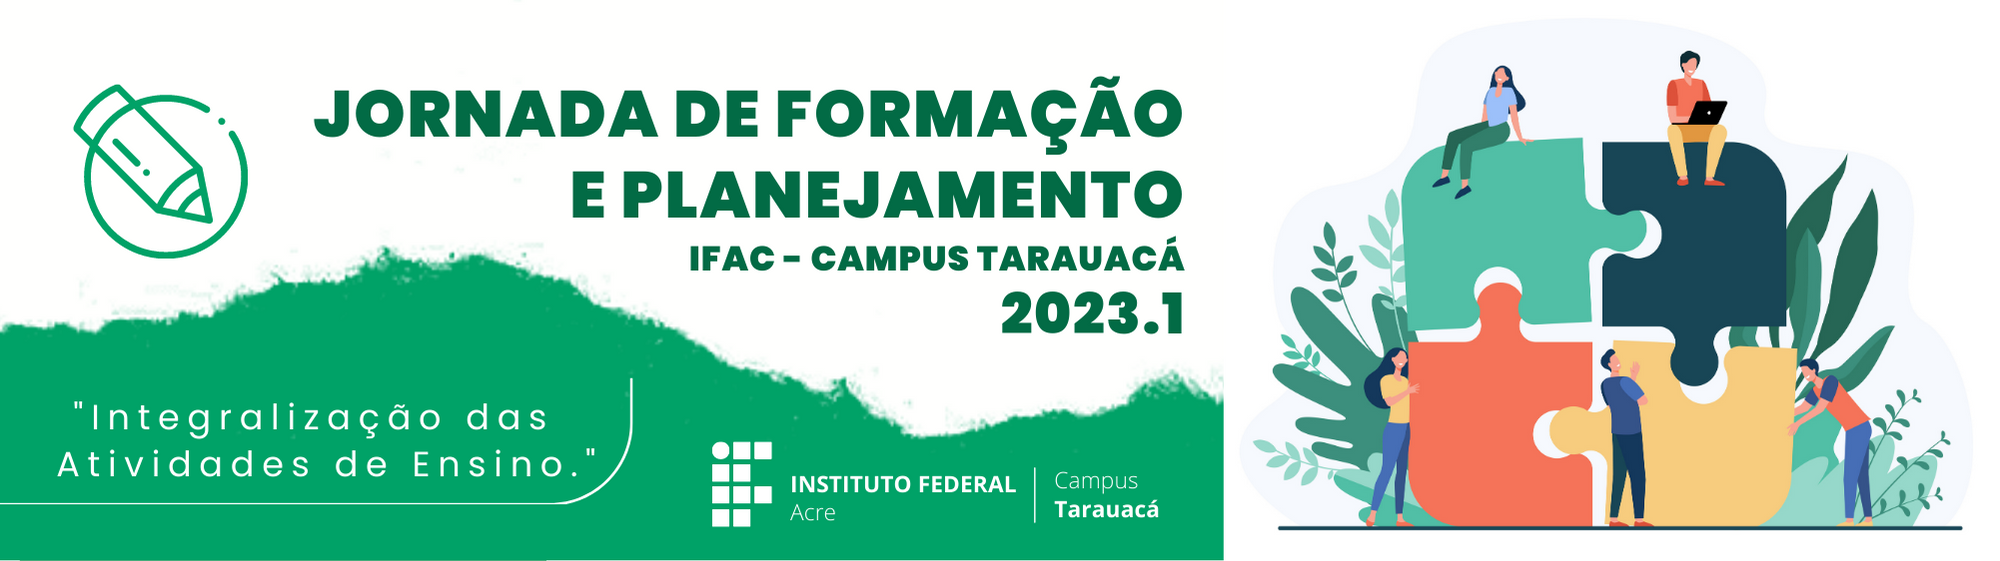 JORNADA DE FORMAÇÃO E PLANEJAMENTO IFAC/CAMPUS TARAUACÁ - 2023.1